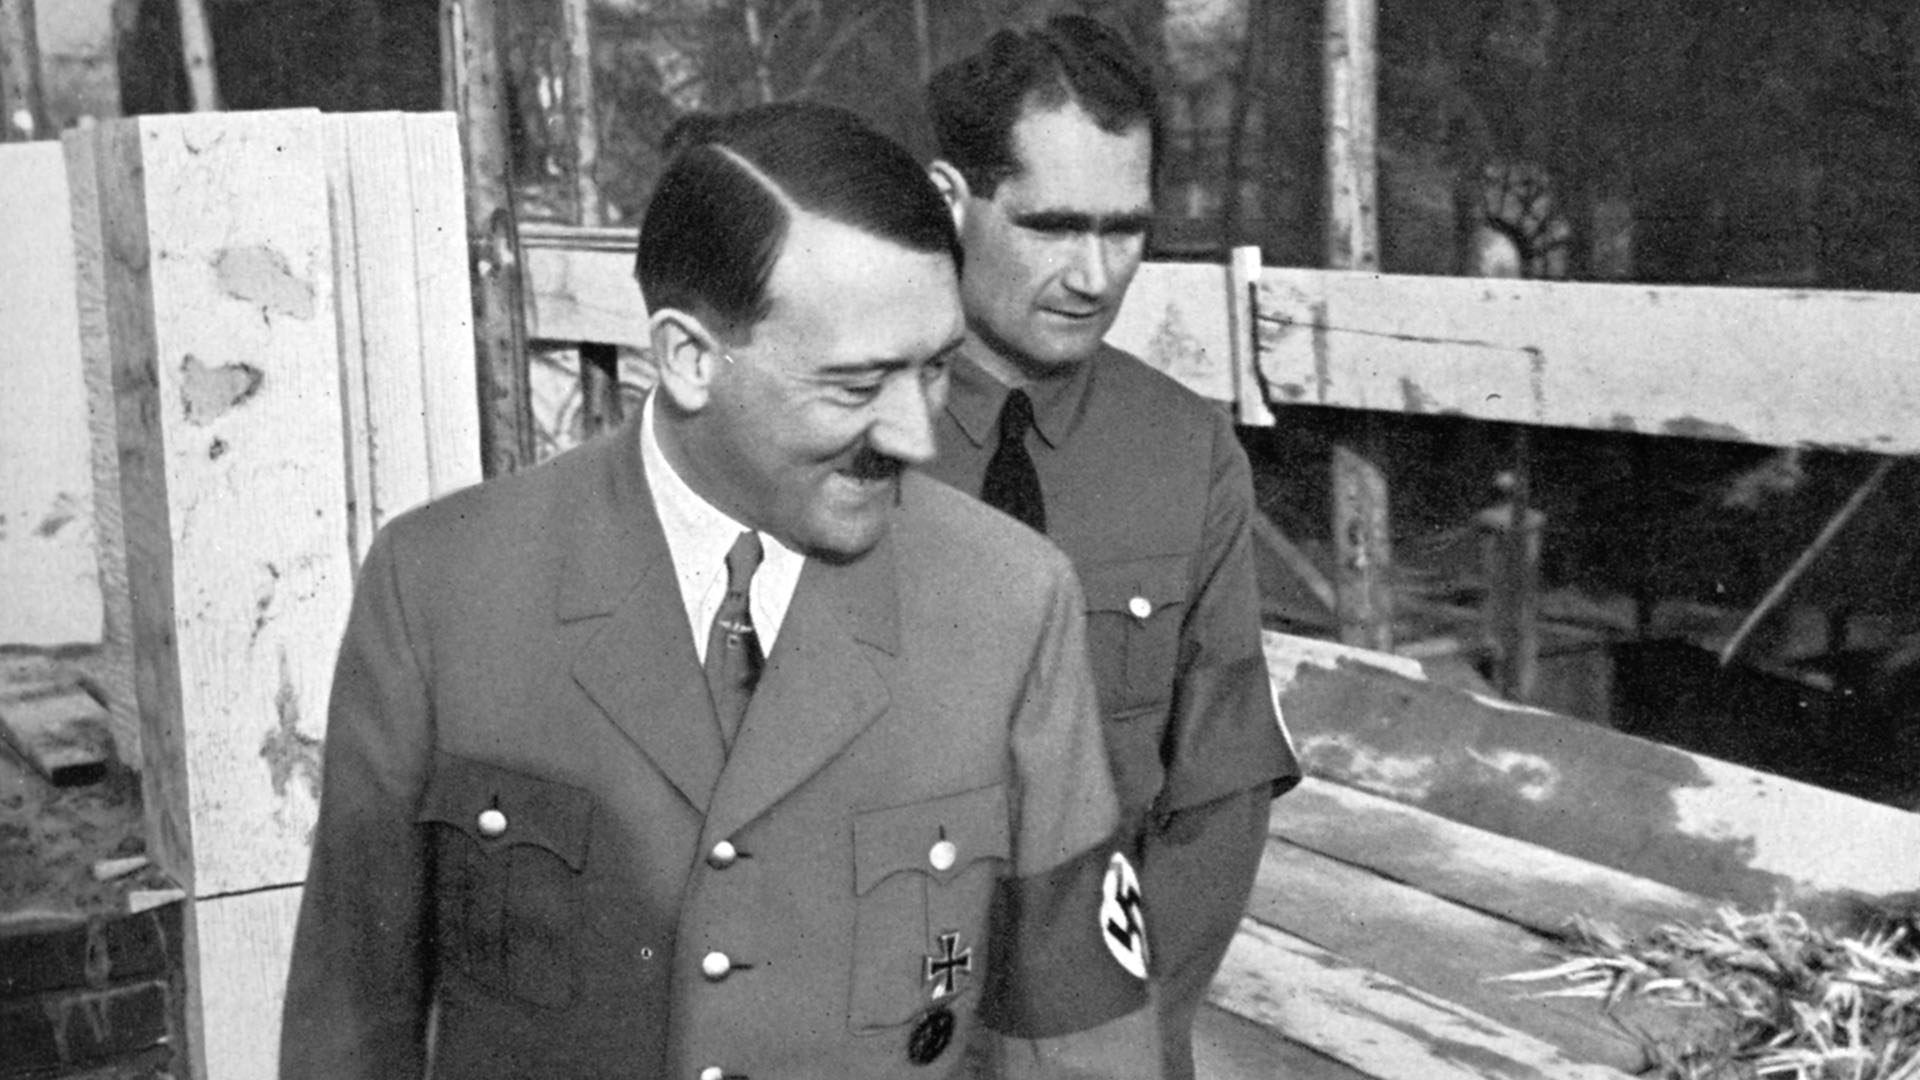 El extraño viaje de Rudolf Hess: la propuesta de paz y los secretos que el nazi se llevó a la tumba